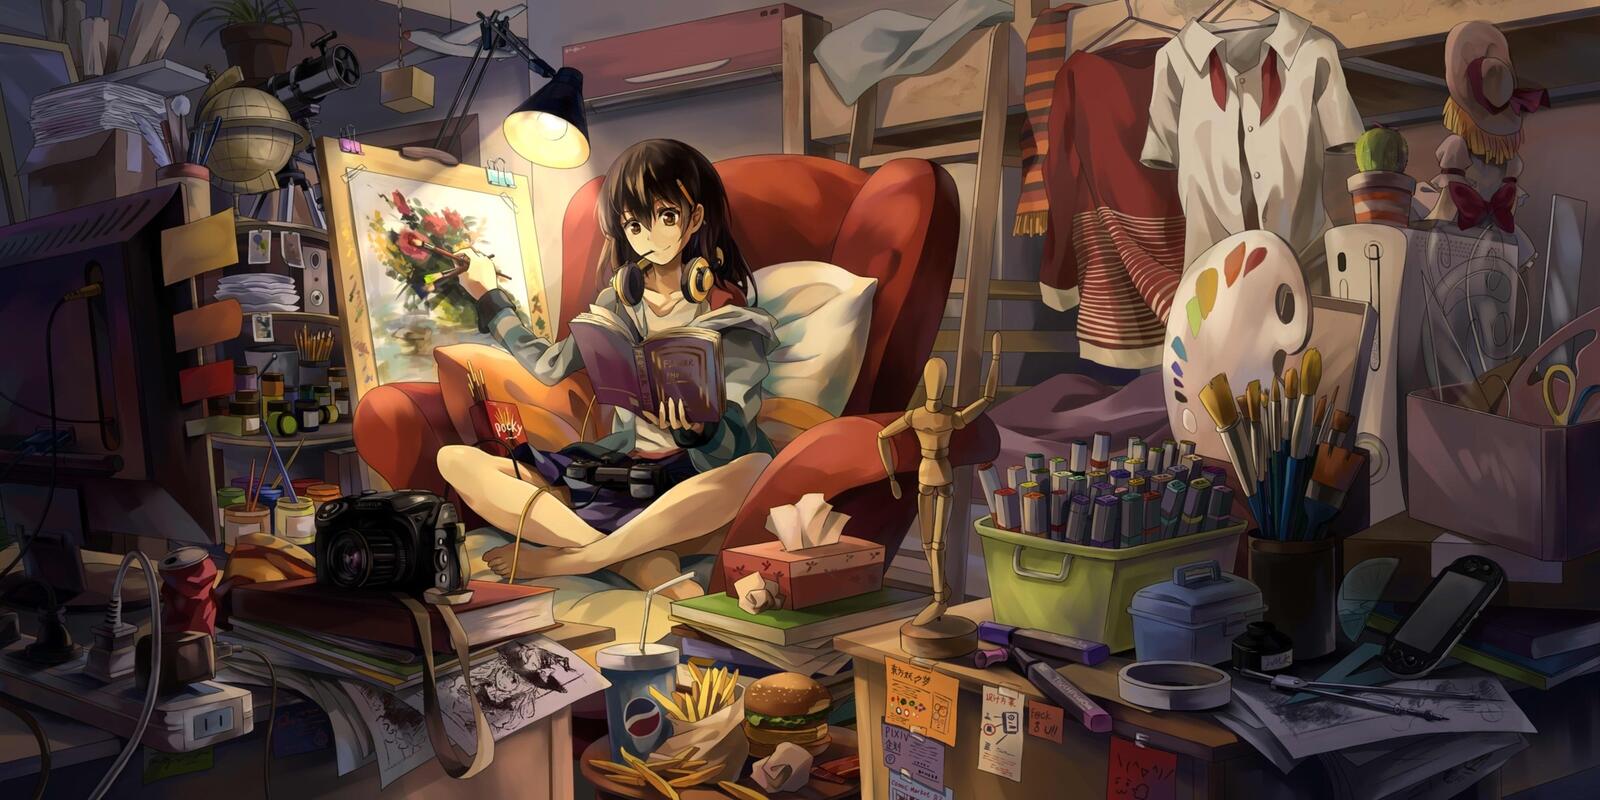 Wallpapers artist girl painting room girl anime on the desktop